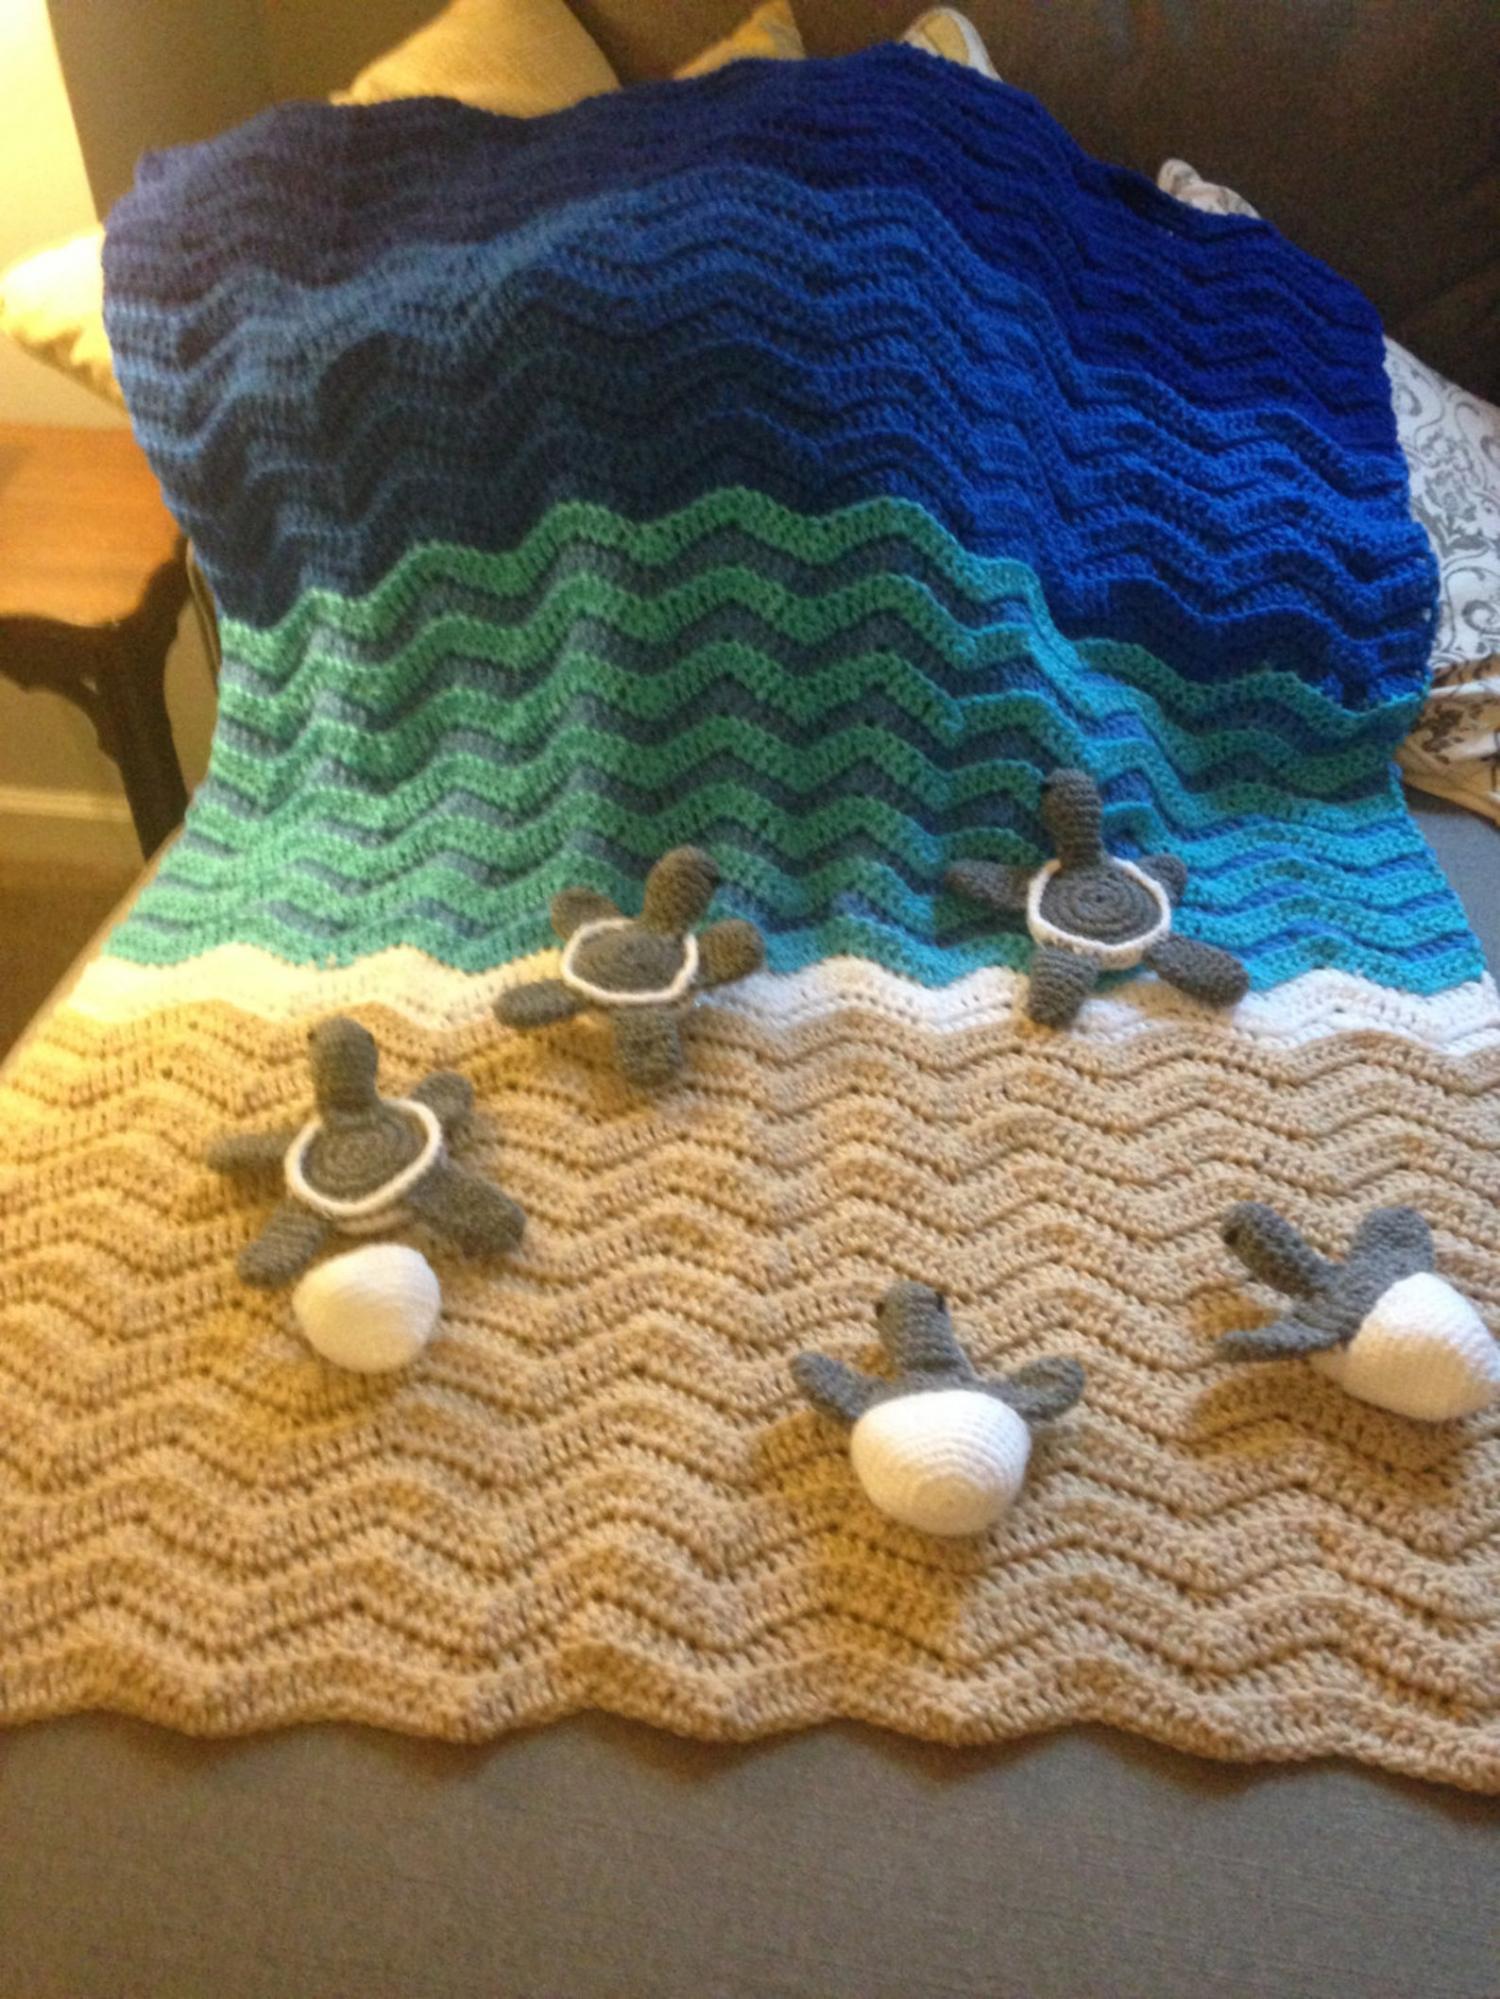 Sea Turtle Beach Blanket - DIY Crochet Sea Turtles Entering The Water On Beach Blanket